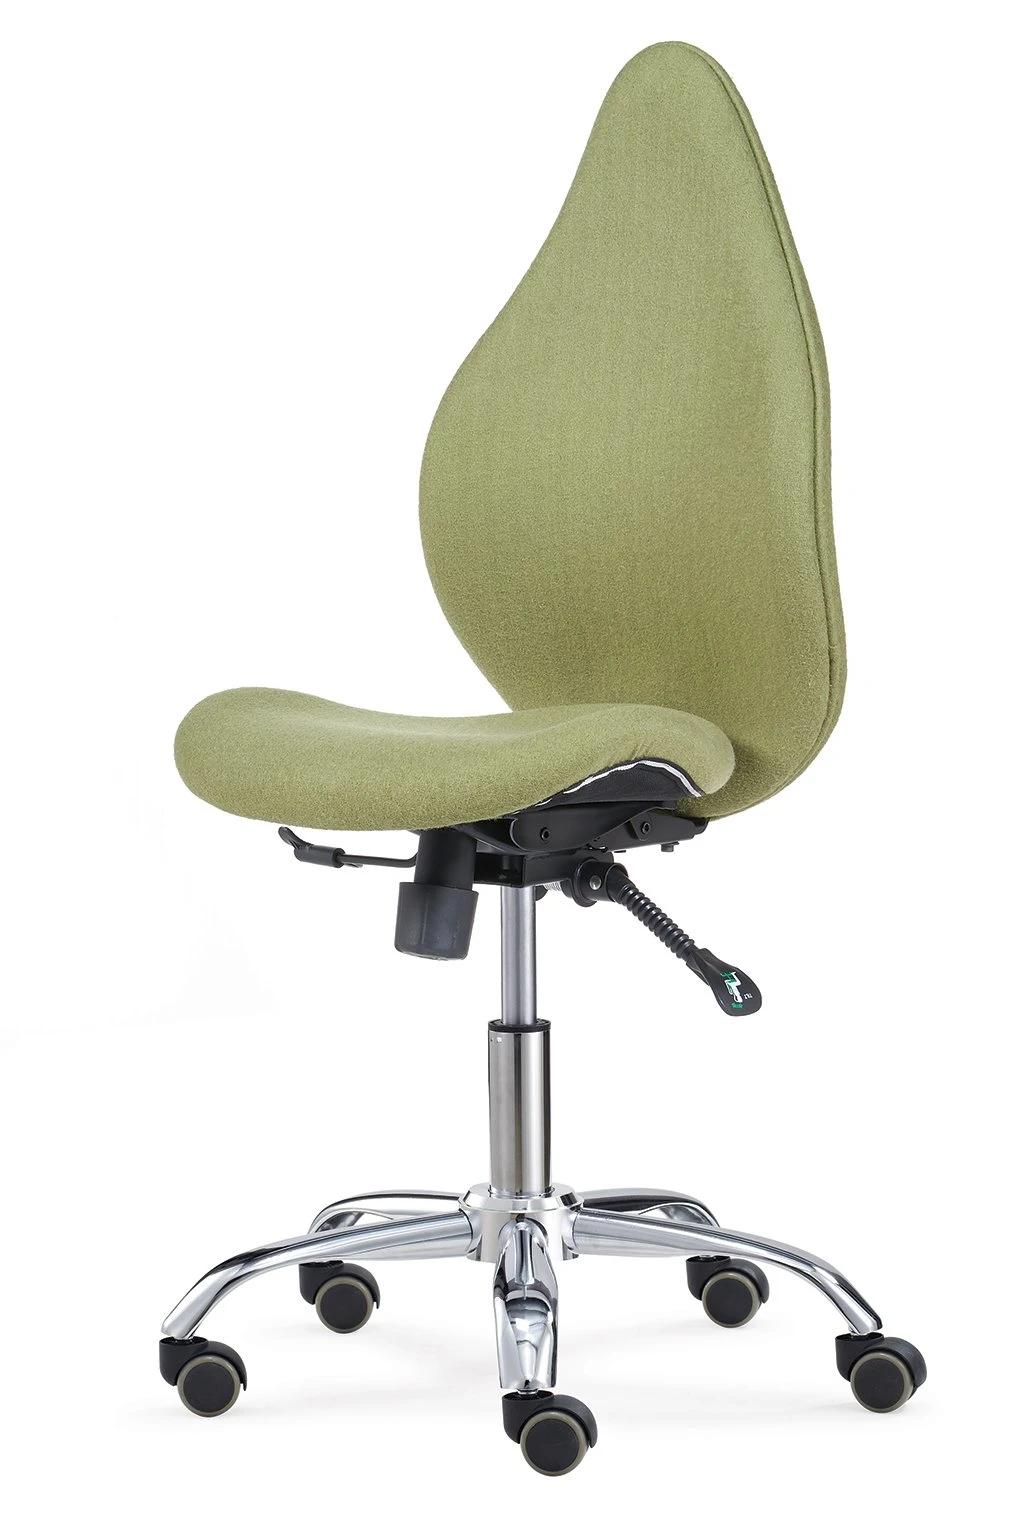 Modern Design Ergonomic Office Furniture Multi Function Swivel Mesh Office Chair for New Office